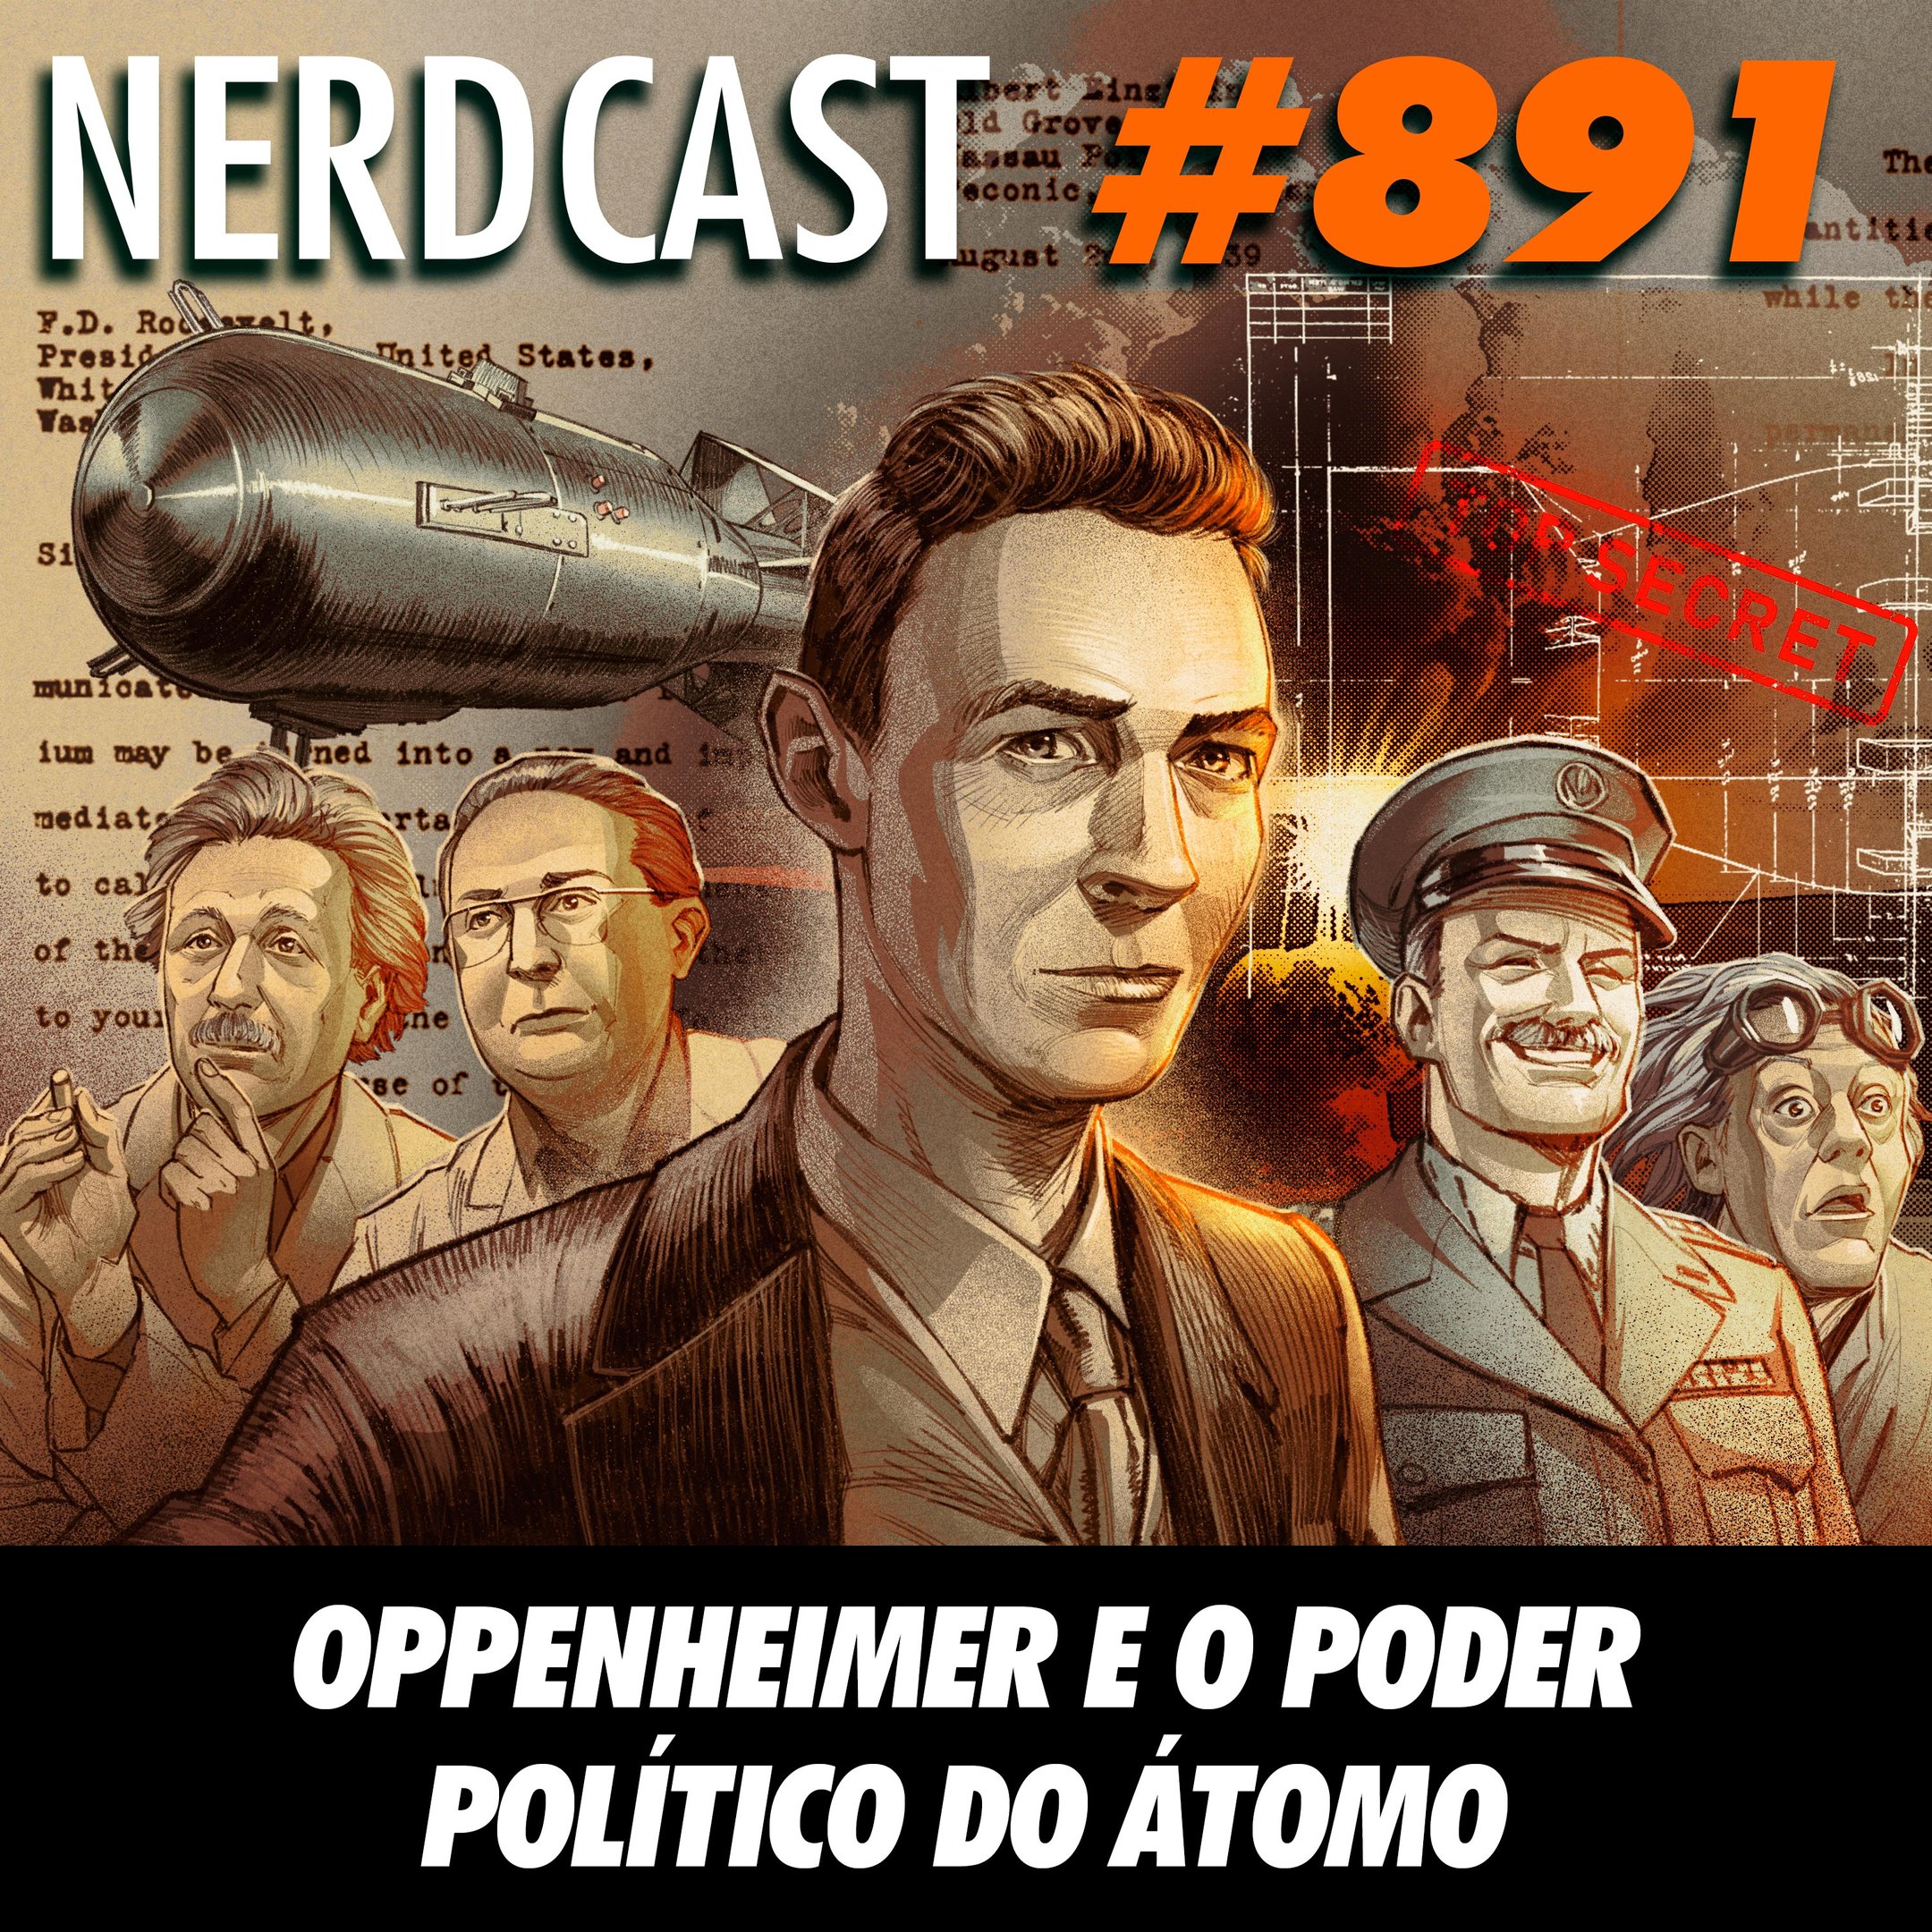 NerdCast 891 - Oppenheimer e o poder político do átomo